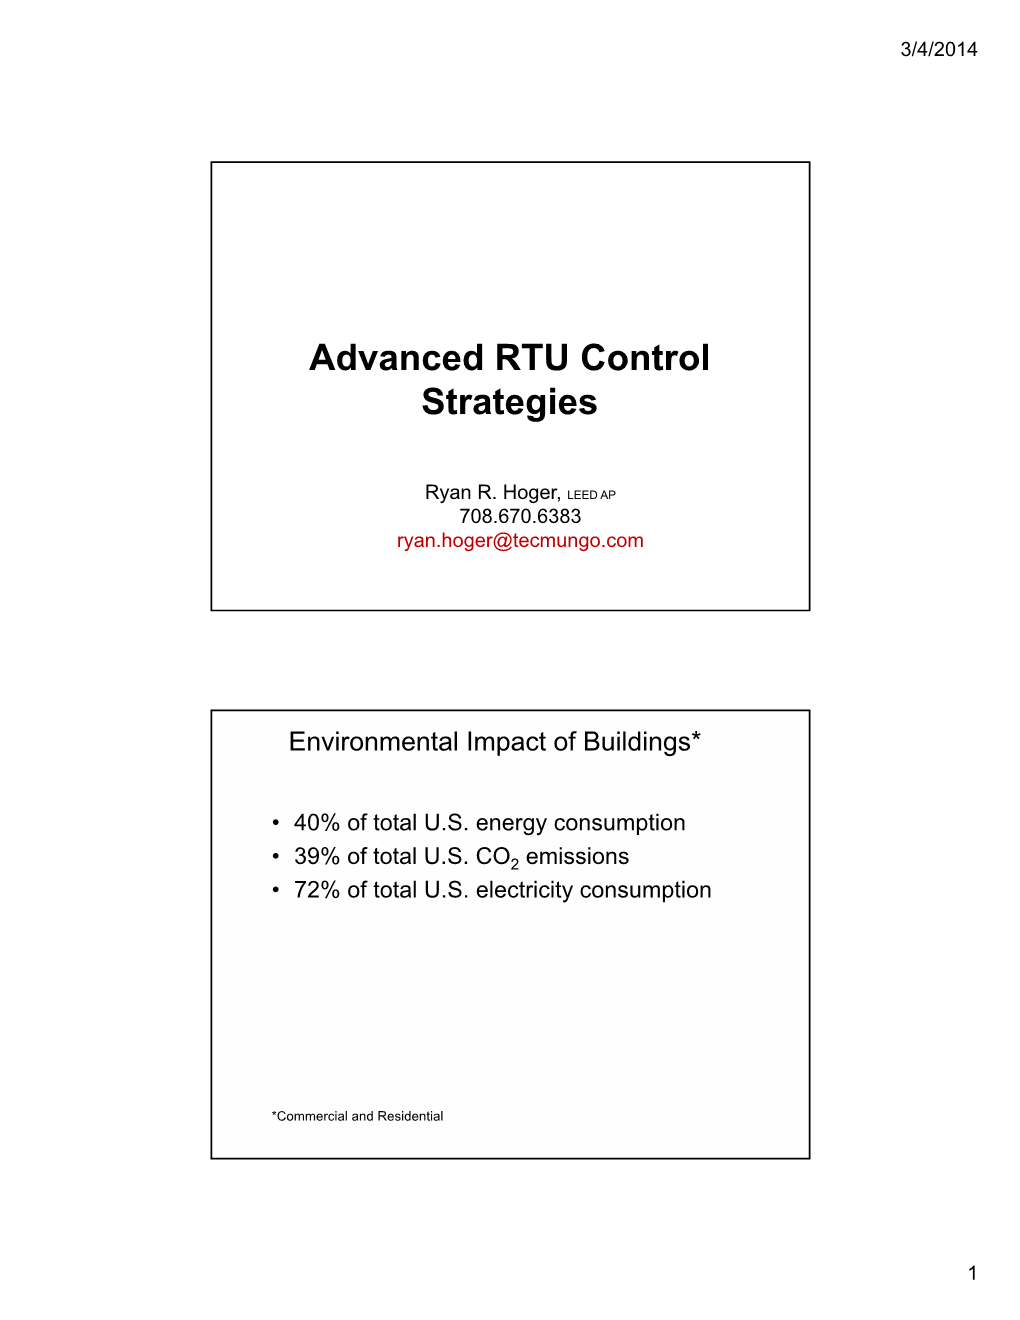 Advanced RTU Control Strategies